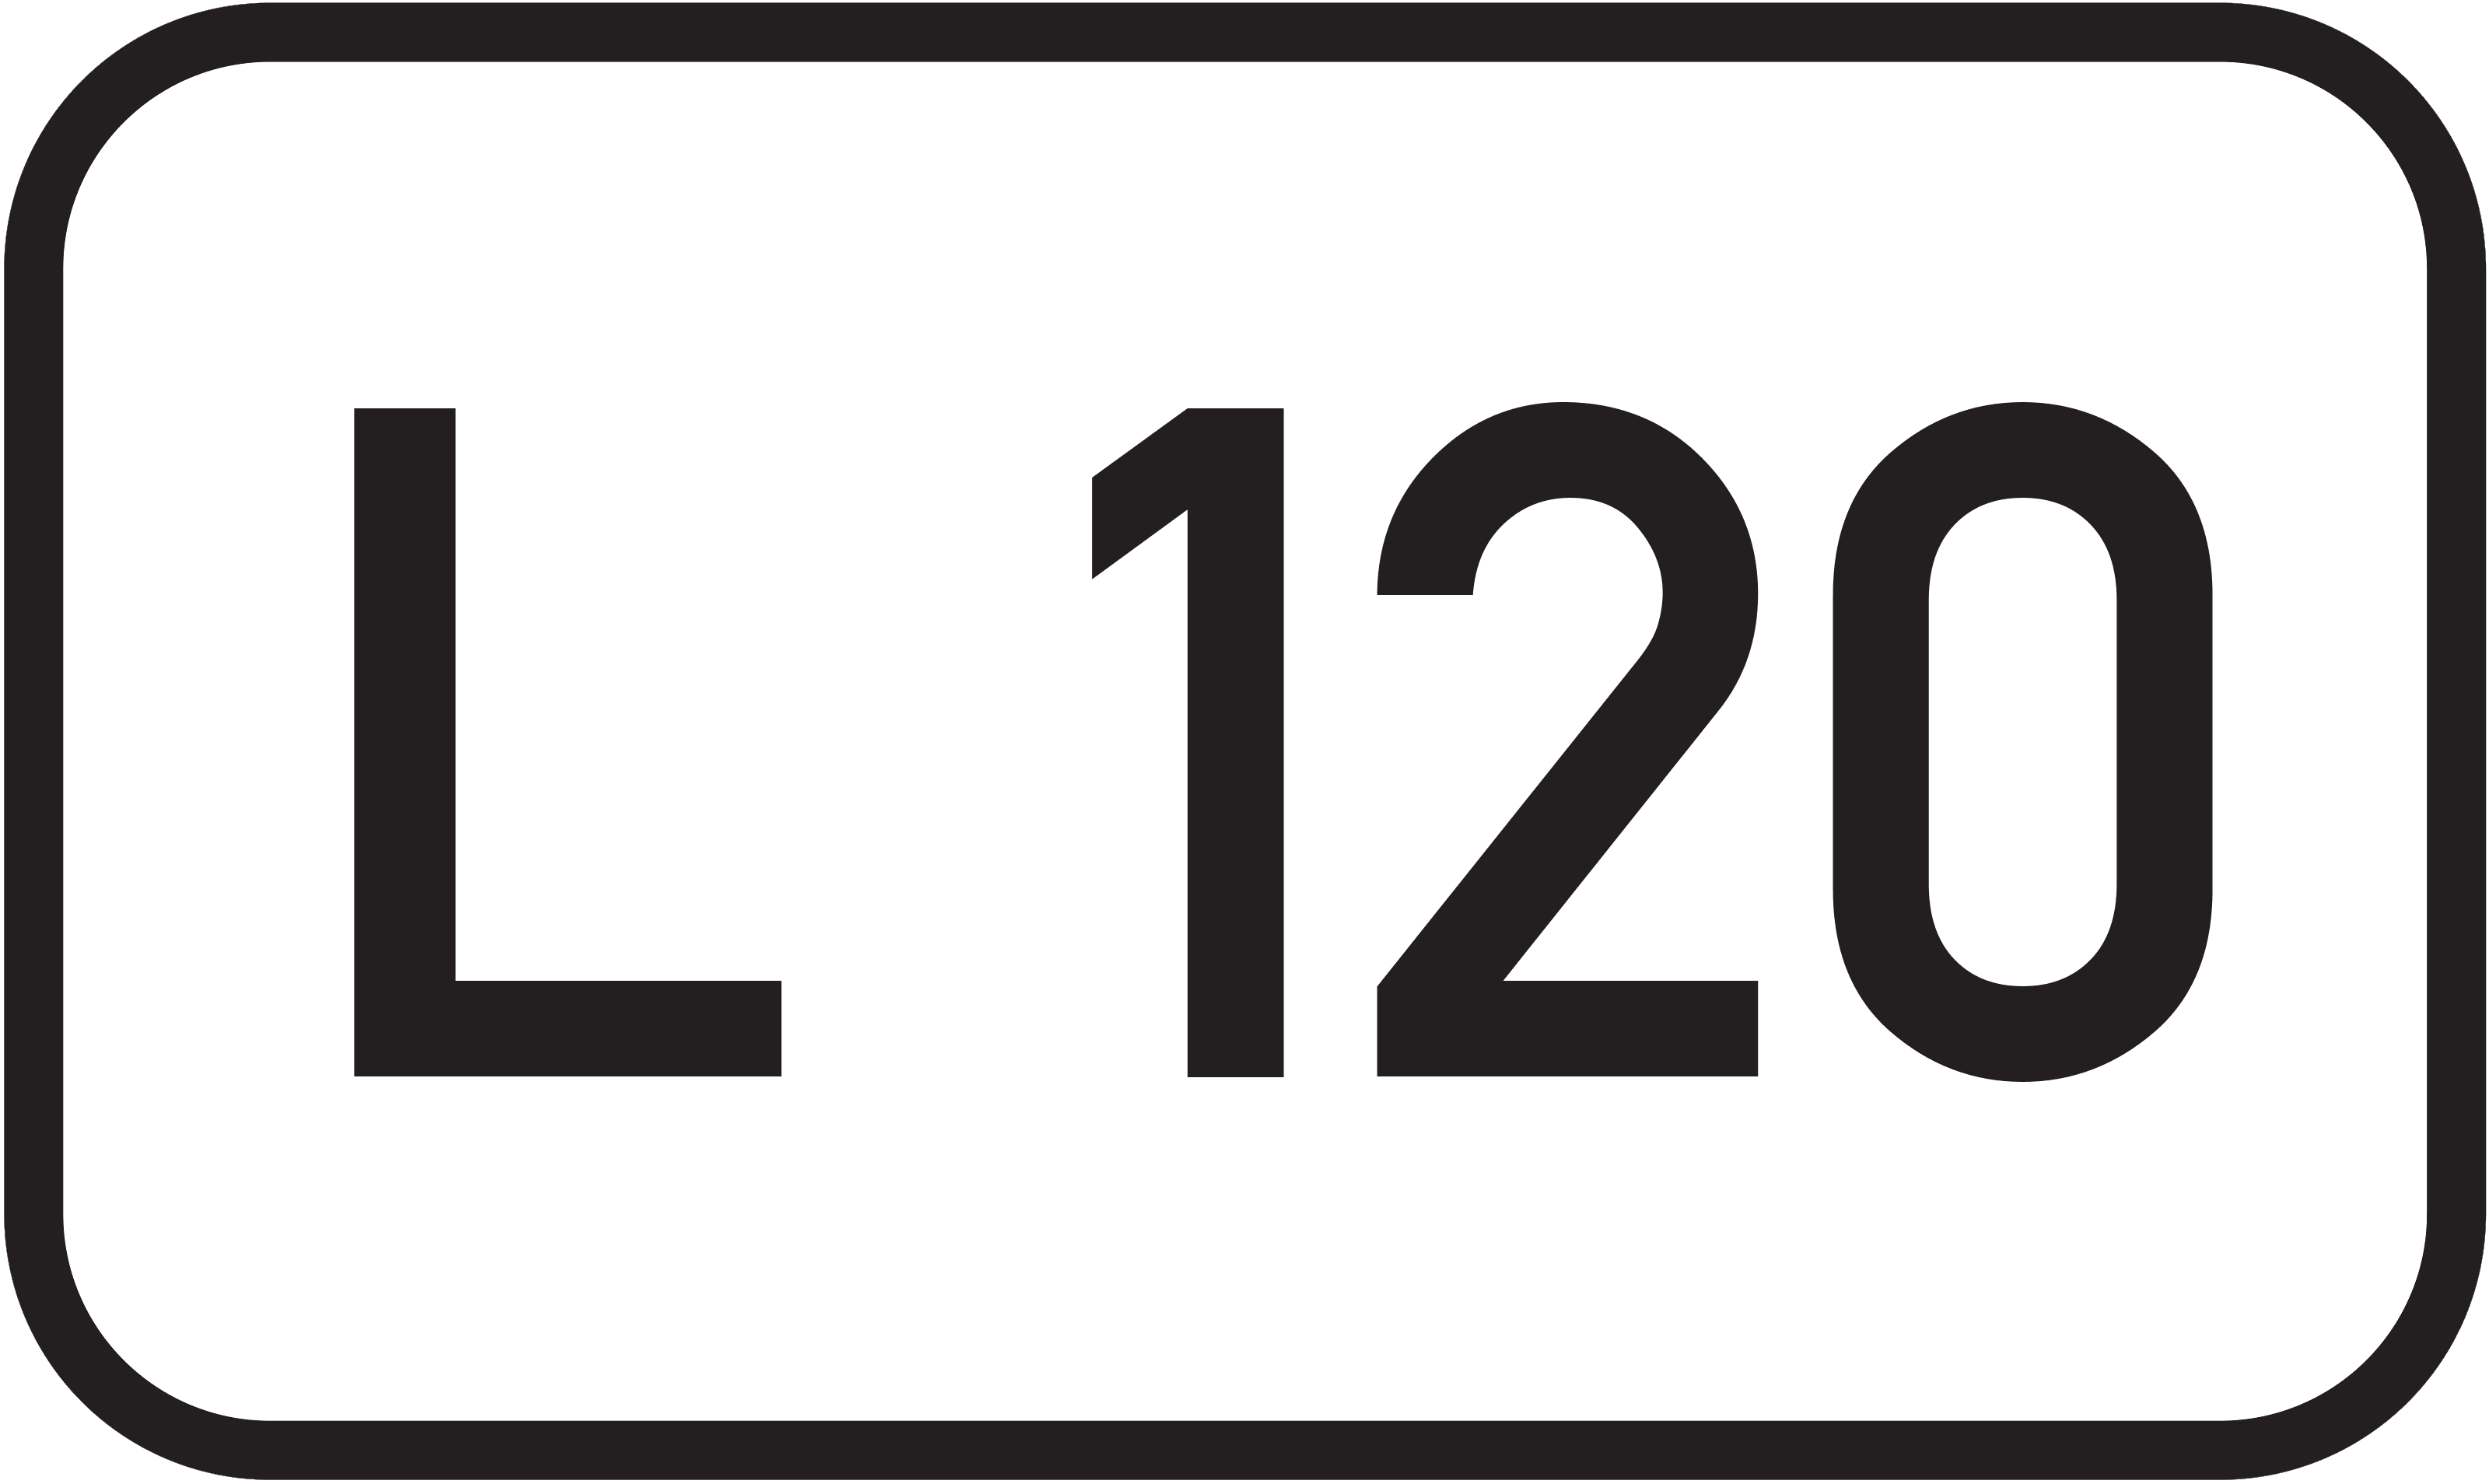 Landesstraße L 120